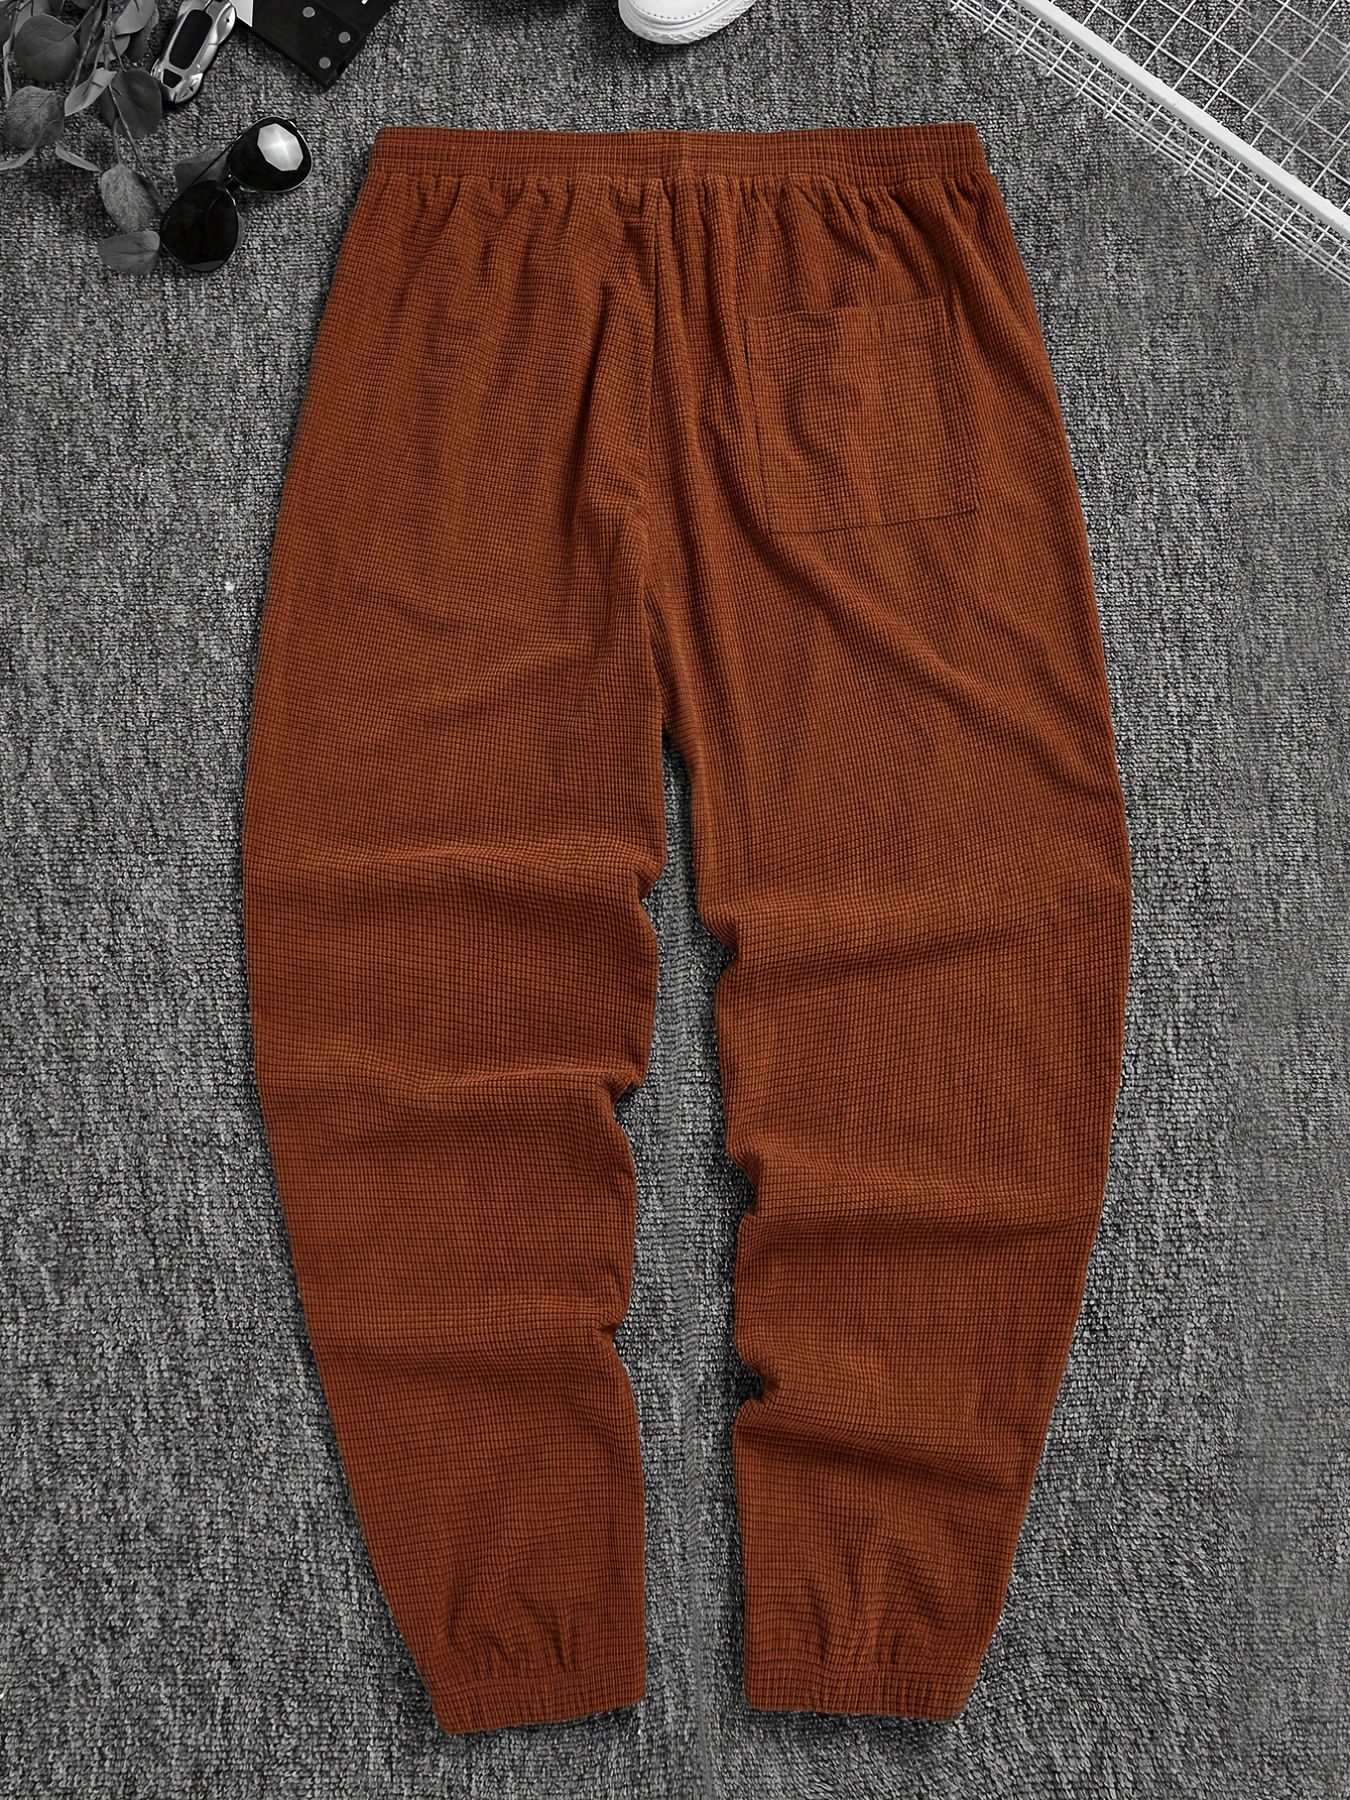 Men Casual Pants Joggers Corduroy Autumn Solid Trousers Sweatpants